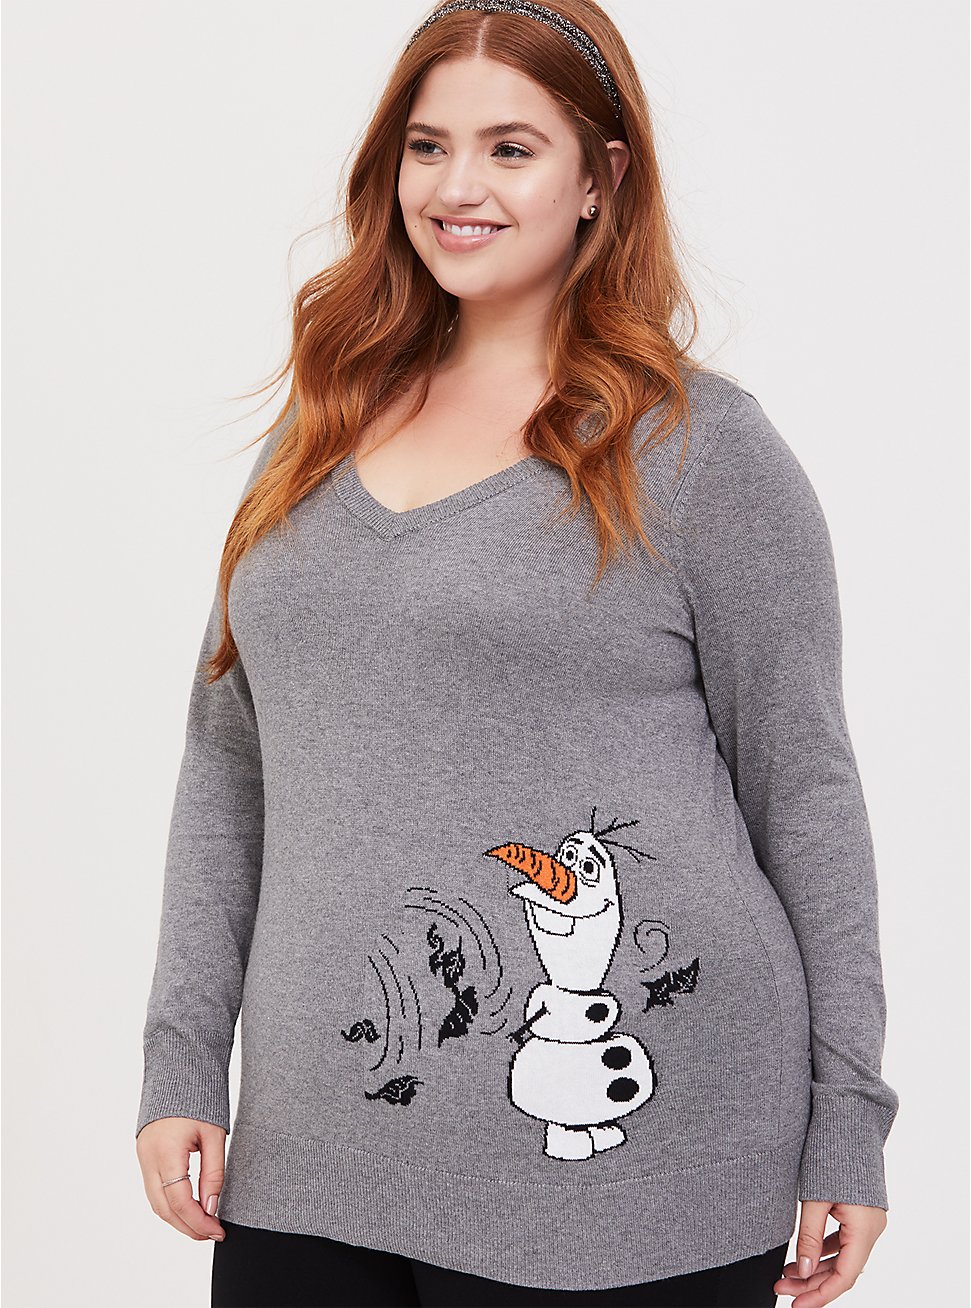 Disney Frozen 2 Olaf Grey V-Neck Sweater, , hi-res